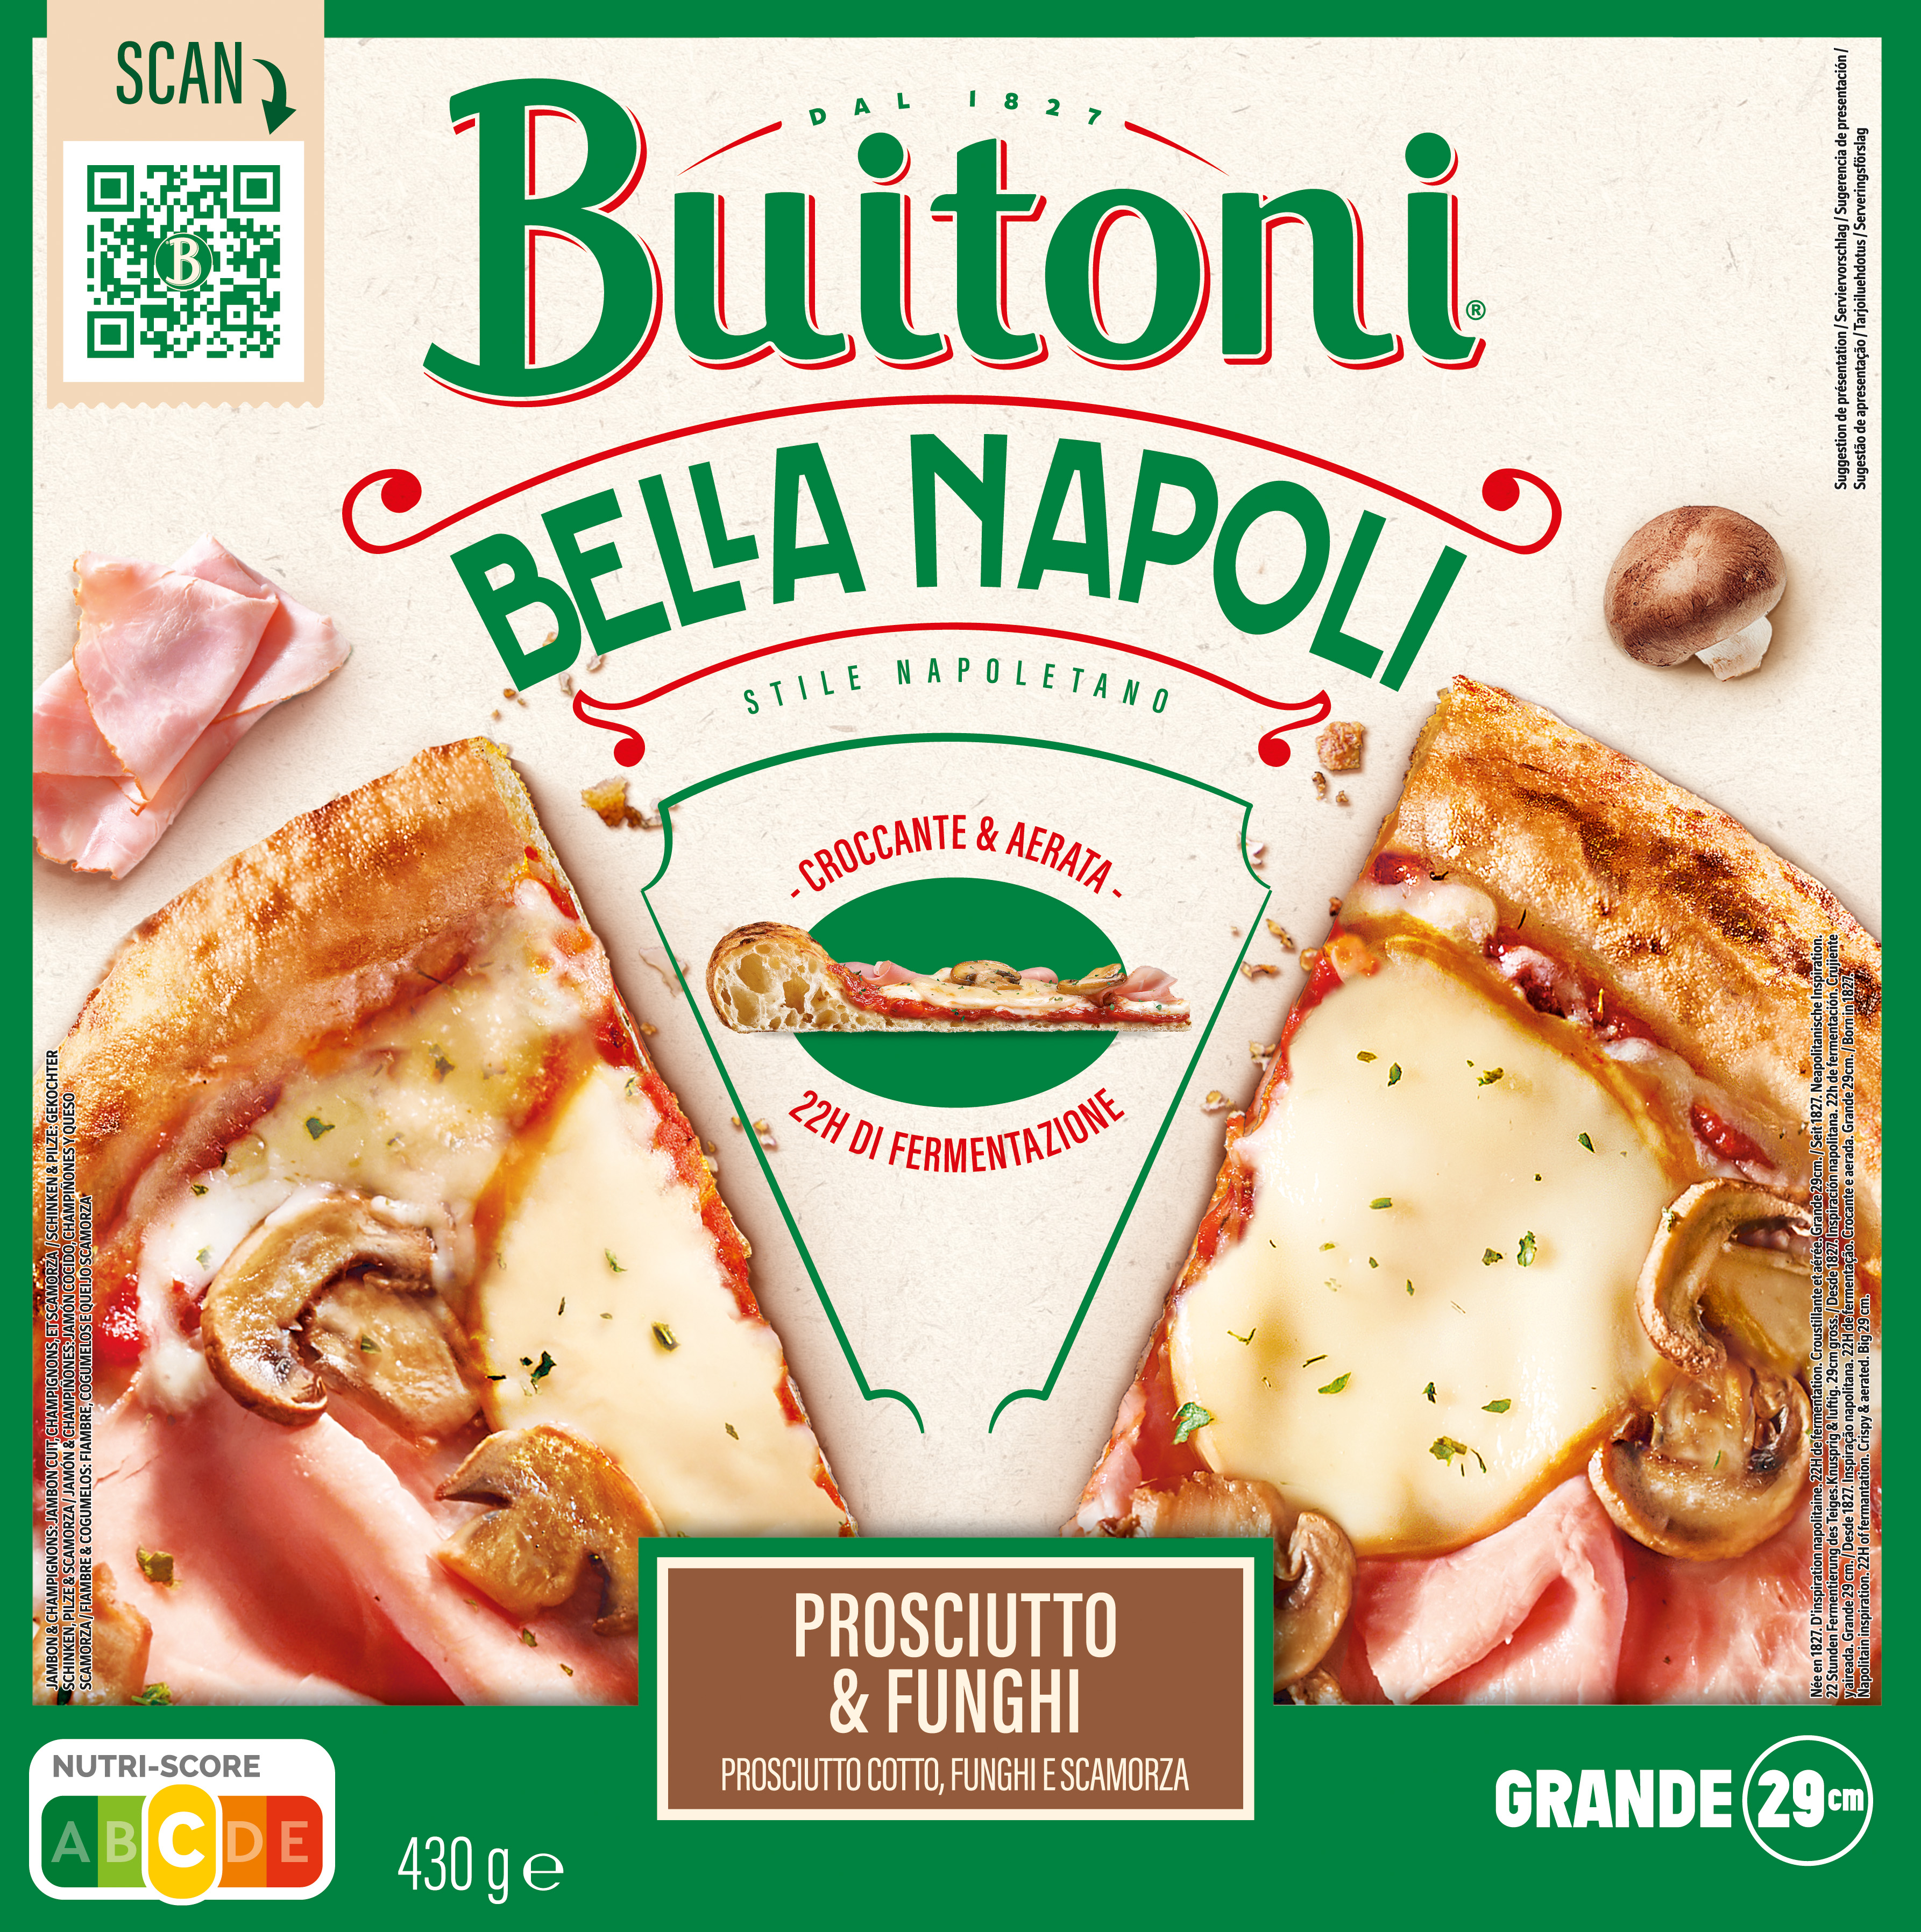 Pizzas Buitoni Bella Napoli